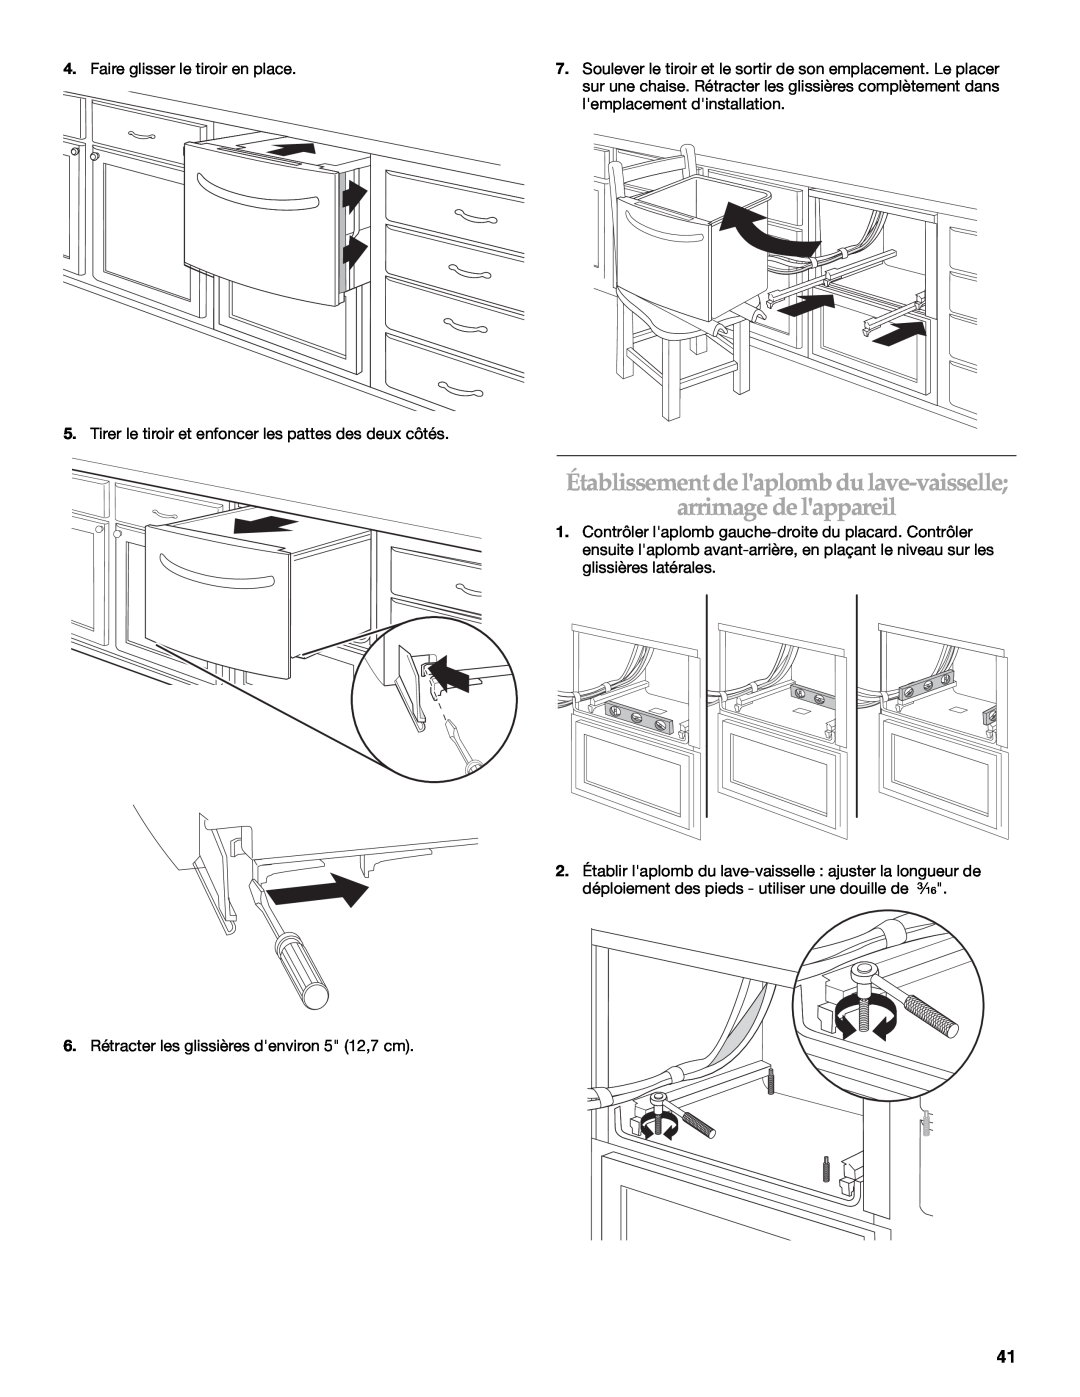 KitchenAid KUDD03STBL installation instructions Établissement de laplomb du lave-vaisselle arrimage de lappareil 